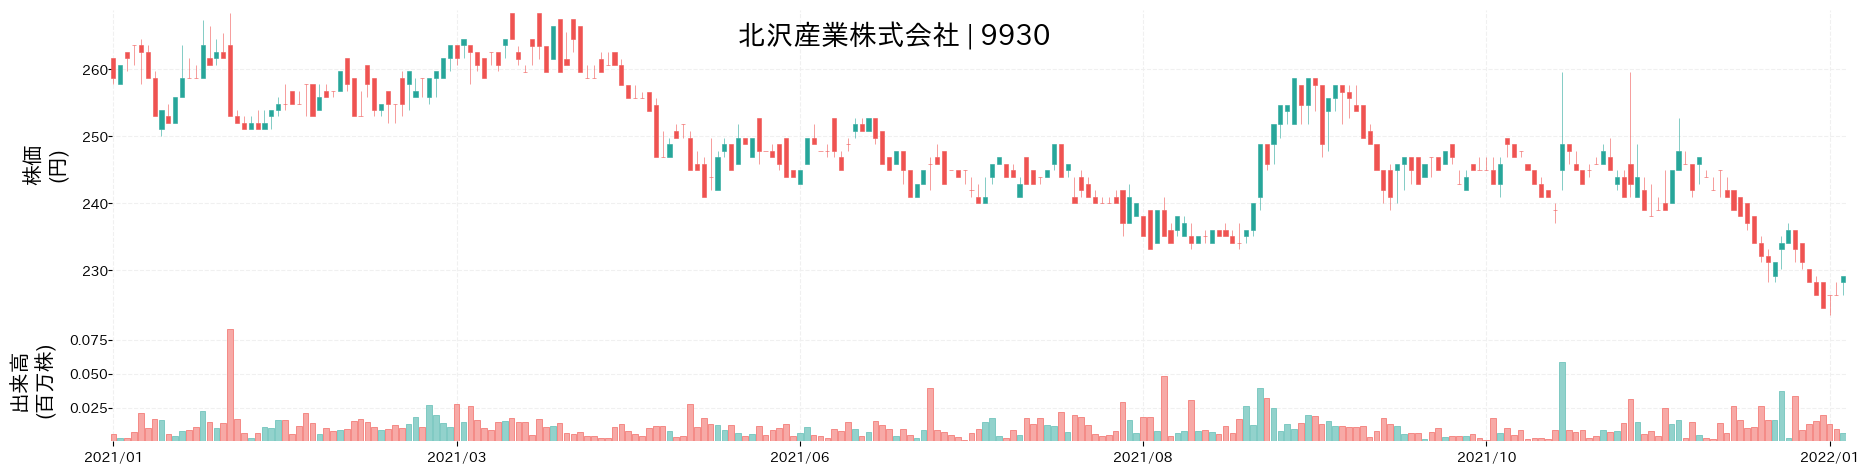 北沢産業の株価推移(2021)